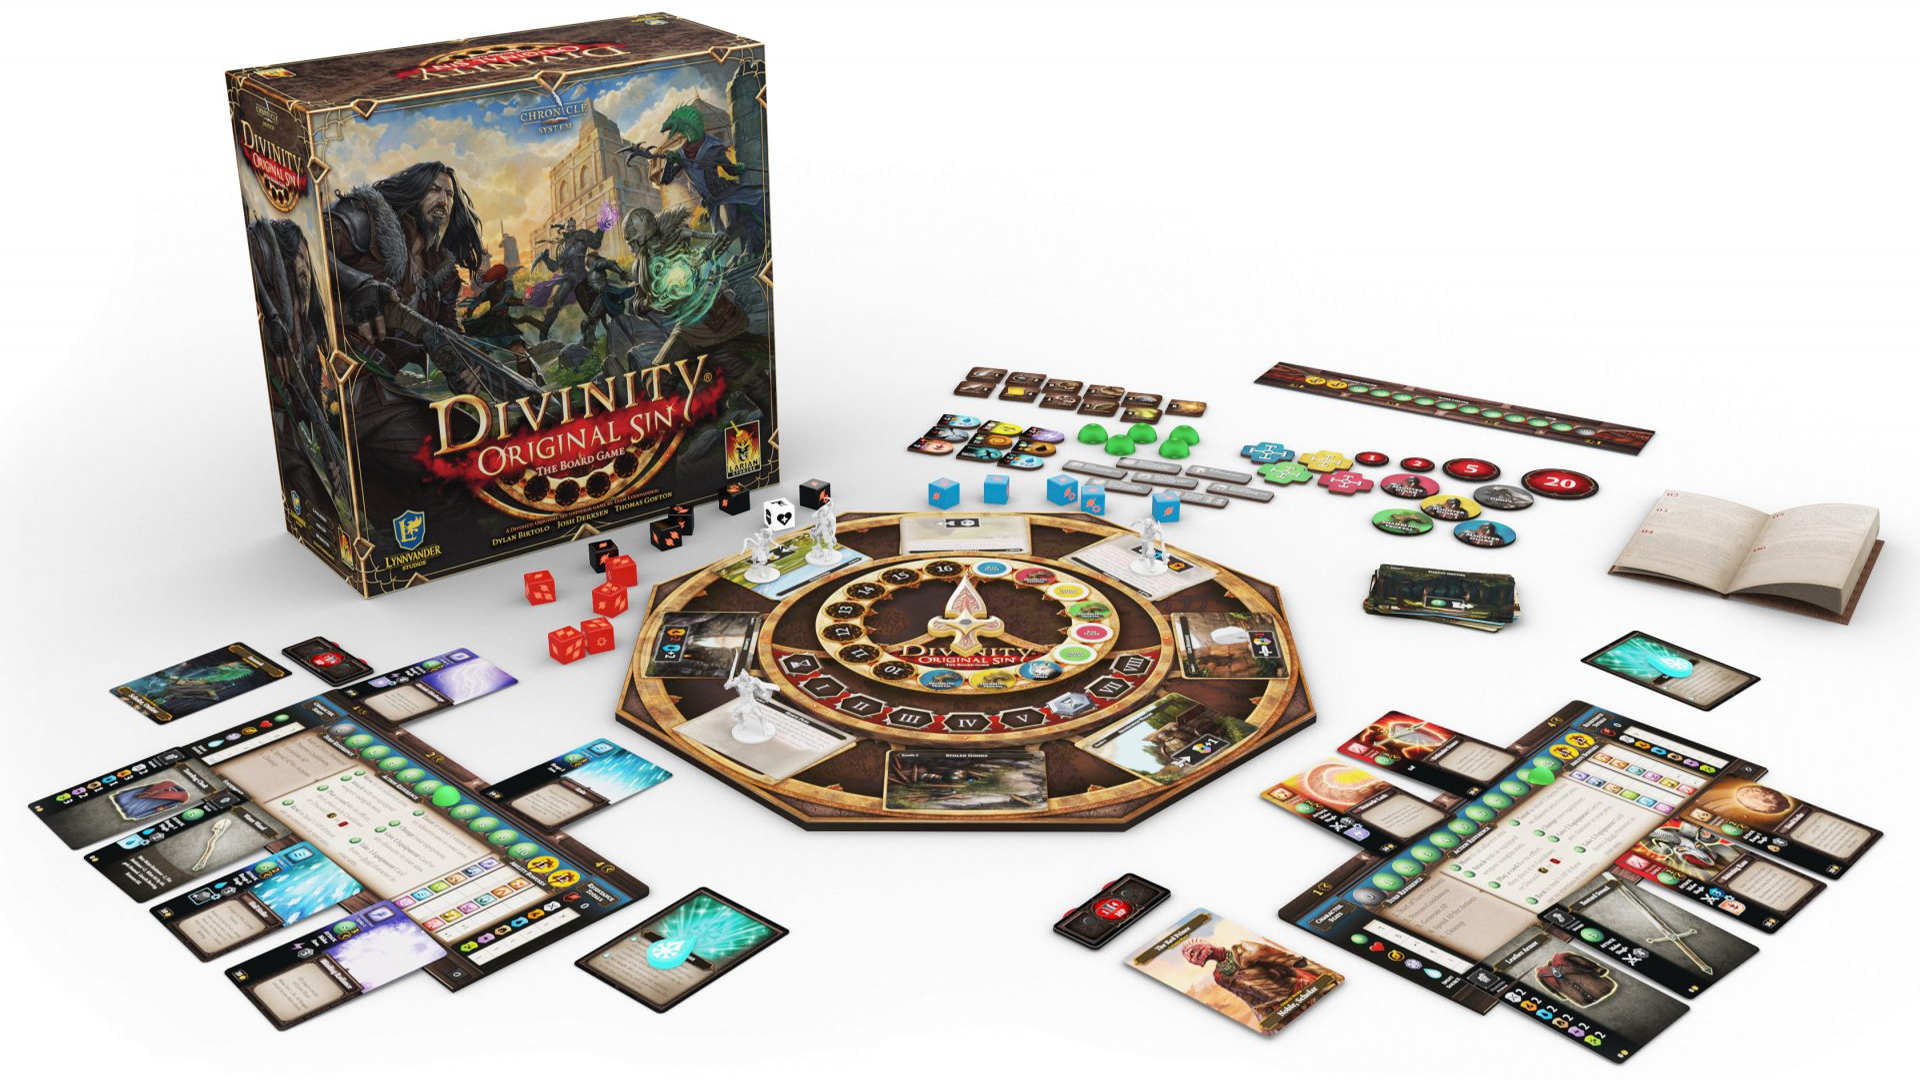 Des précisions sur le jeu de plateau Divinity Original Sin: Board Game